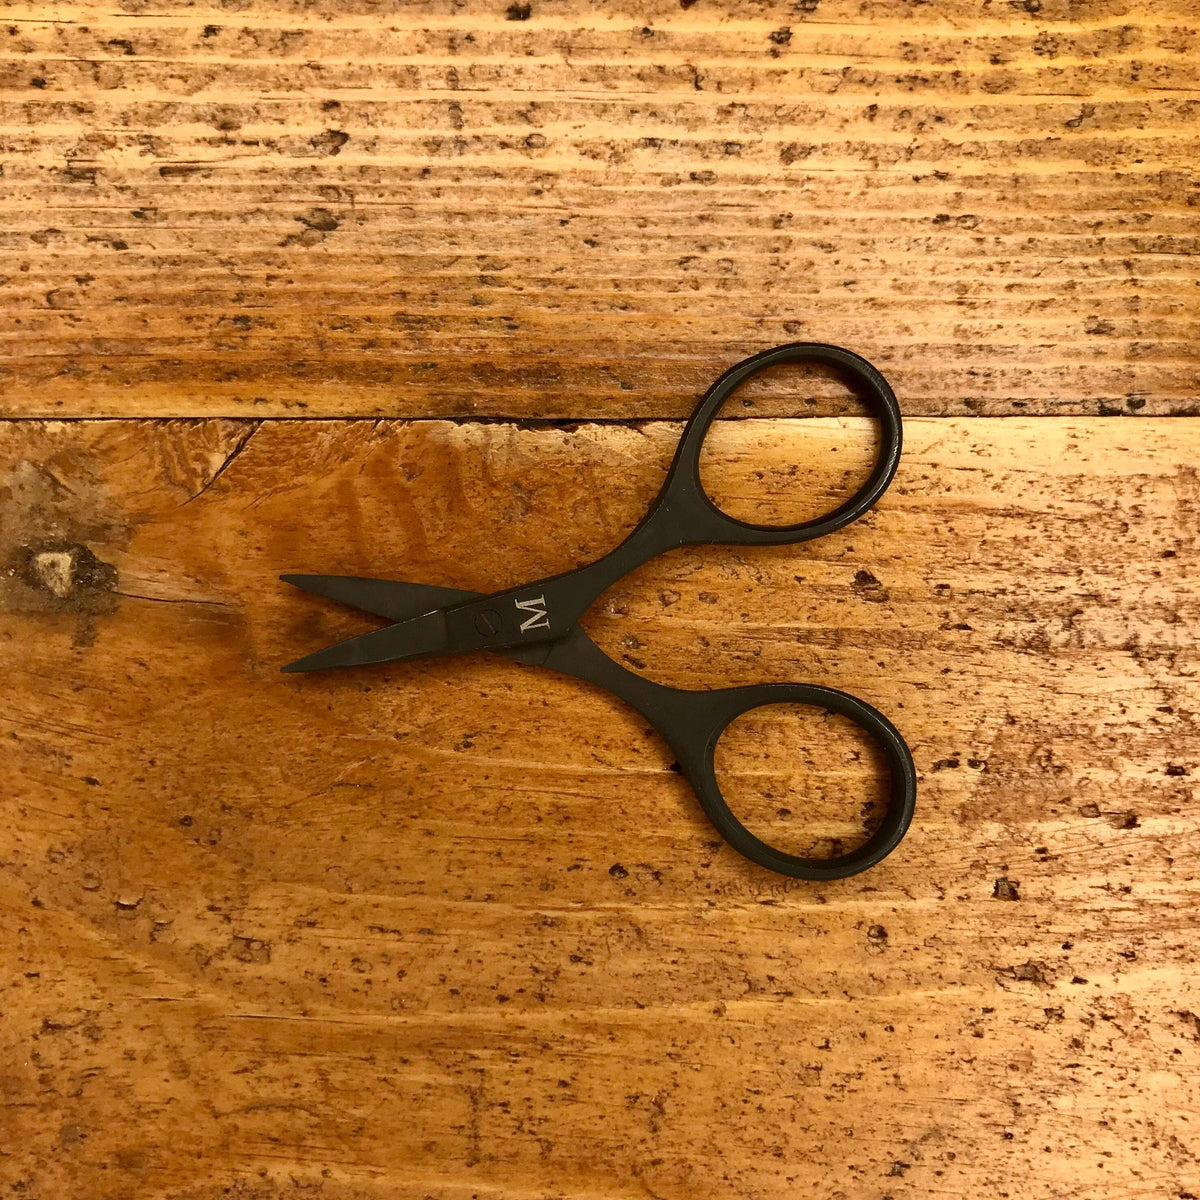 Merchant & Mills Baby Bow Scissors - theweavingroom